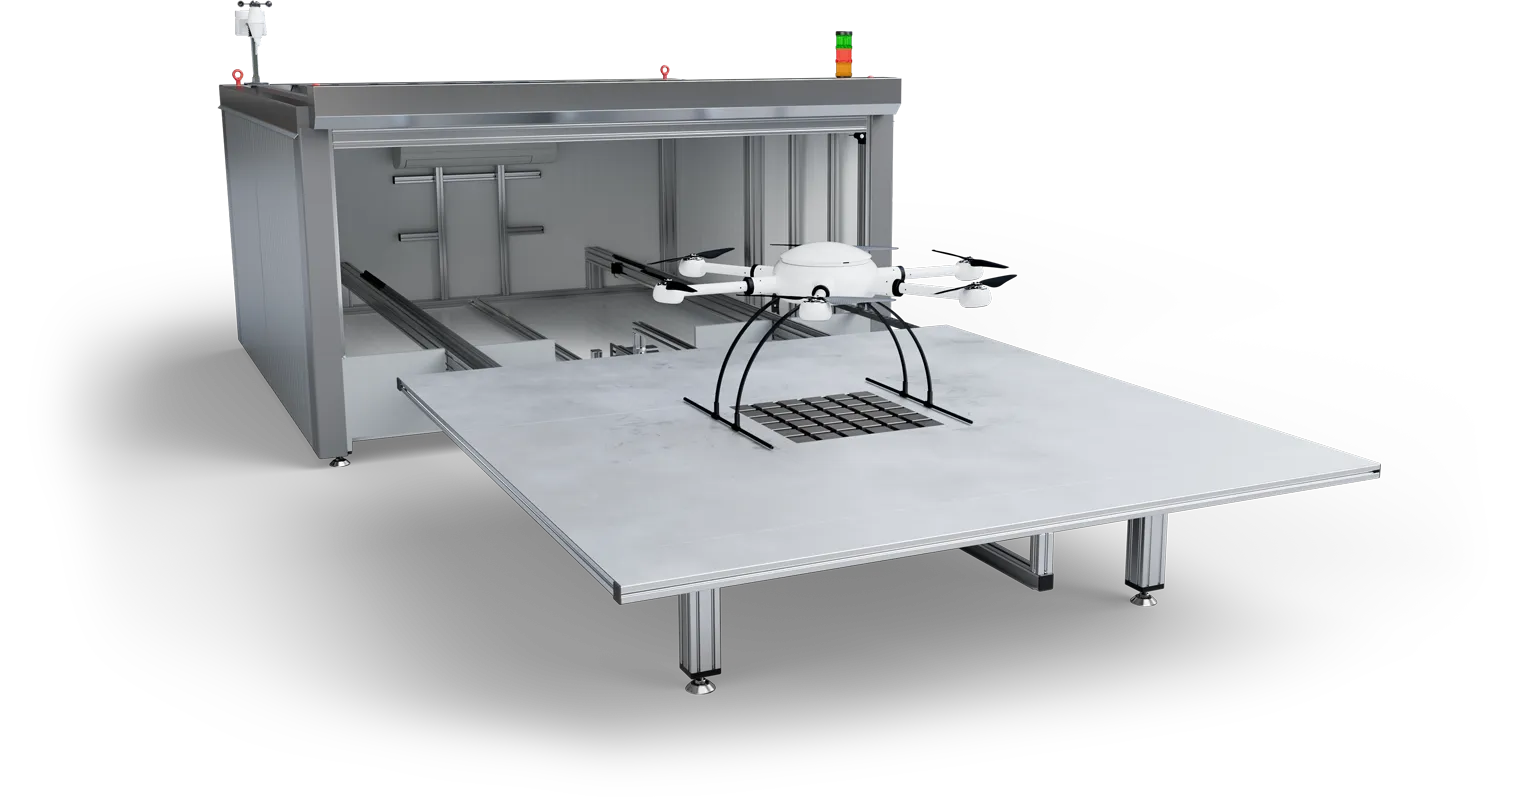 Exabotix DronePort Vue du hangar depuis le haut à gauche avec le drone Mercury pour des missions de drone répétitives et automatisées.